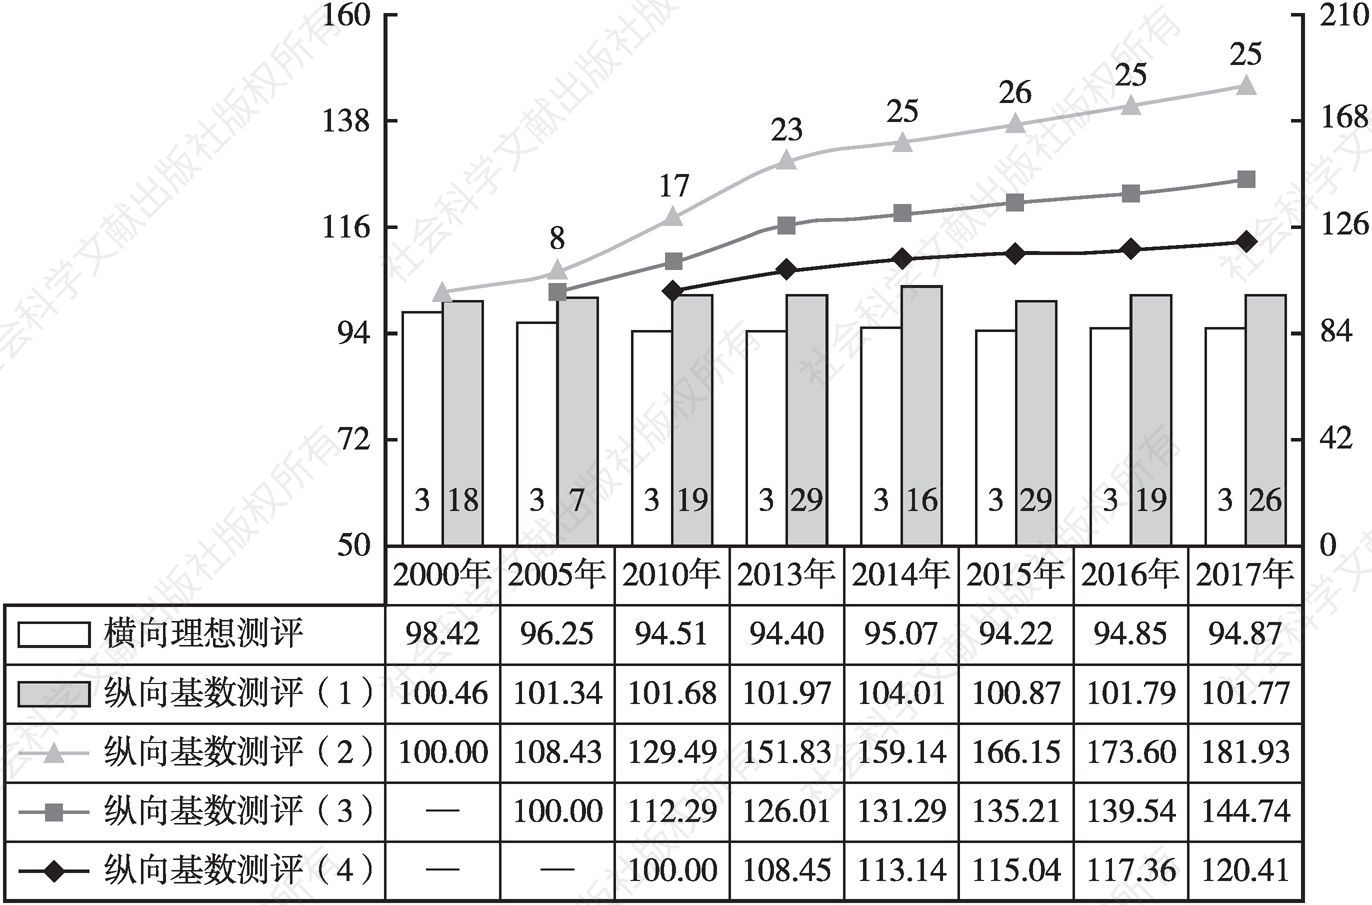 图6 2000年以来浙江城乡居民生活发展指数变动态势